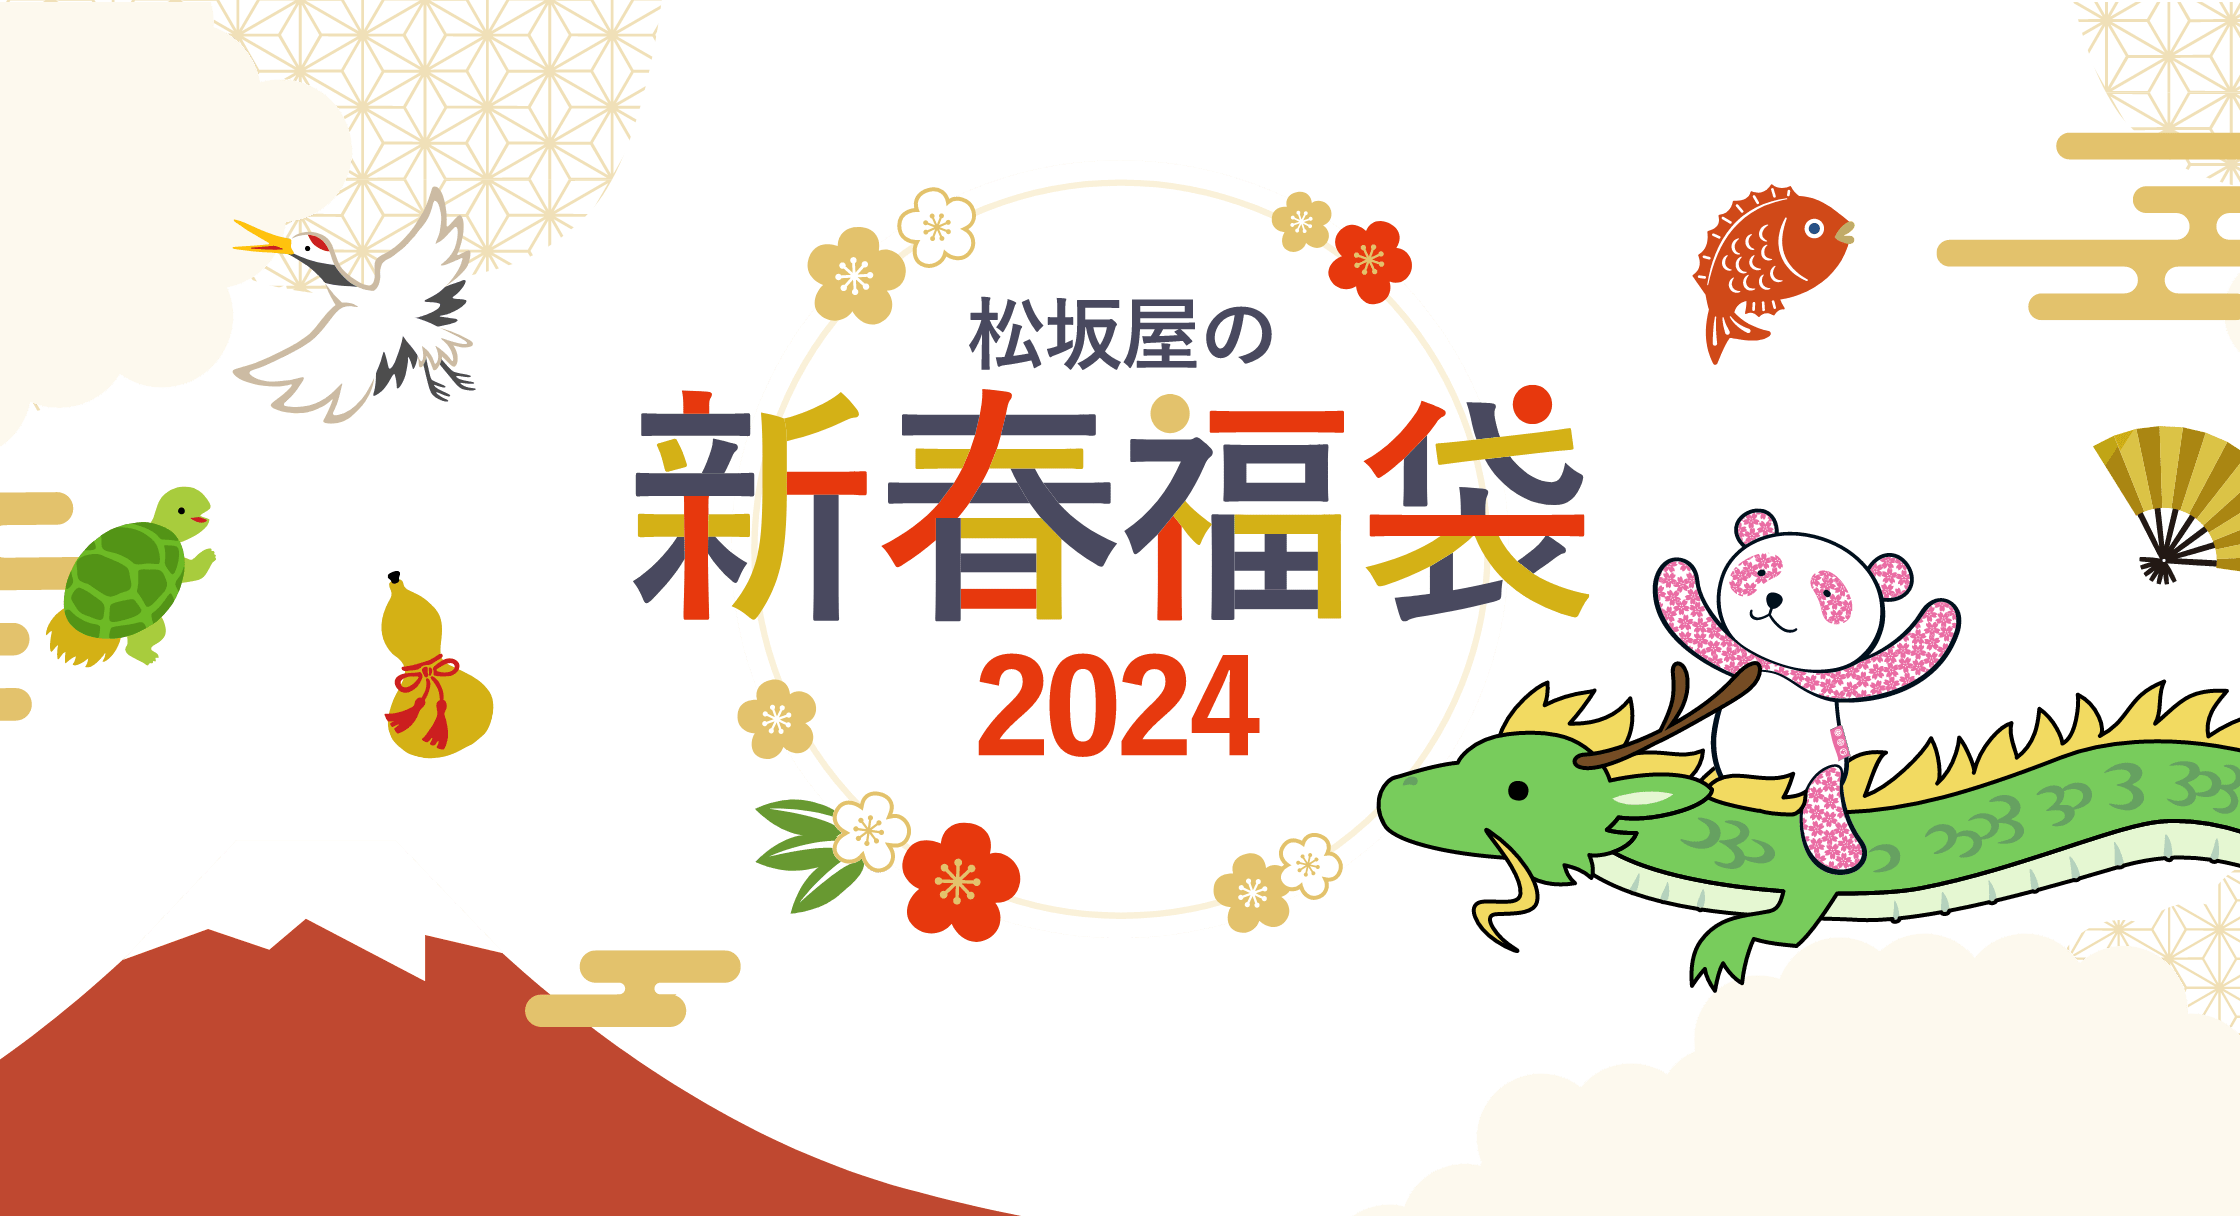 2024年の福袋は、今年のうちに予約して手に入れよう！｜松坂屋の事前福袋&オンライン福袋 2024年